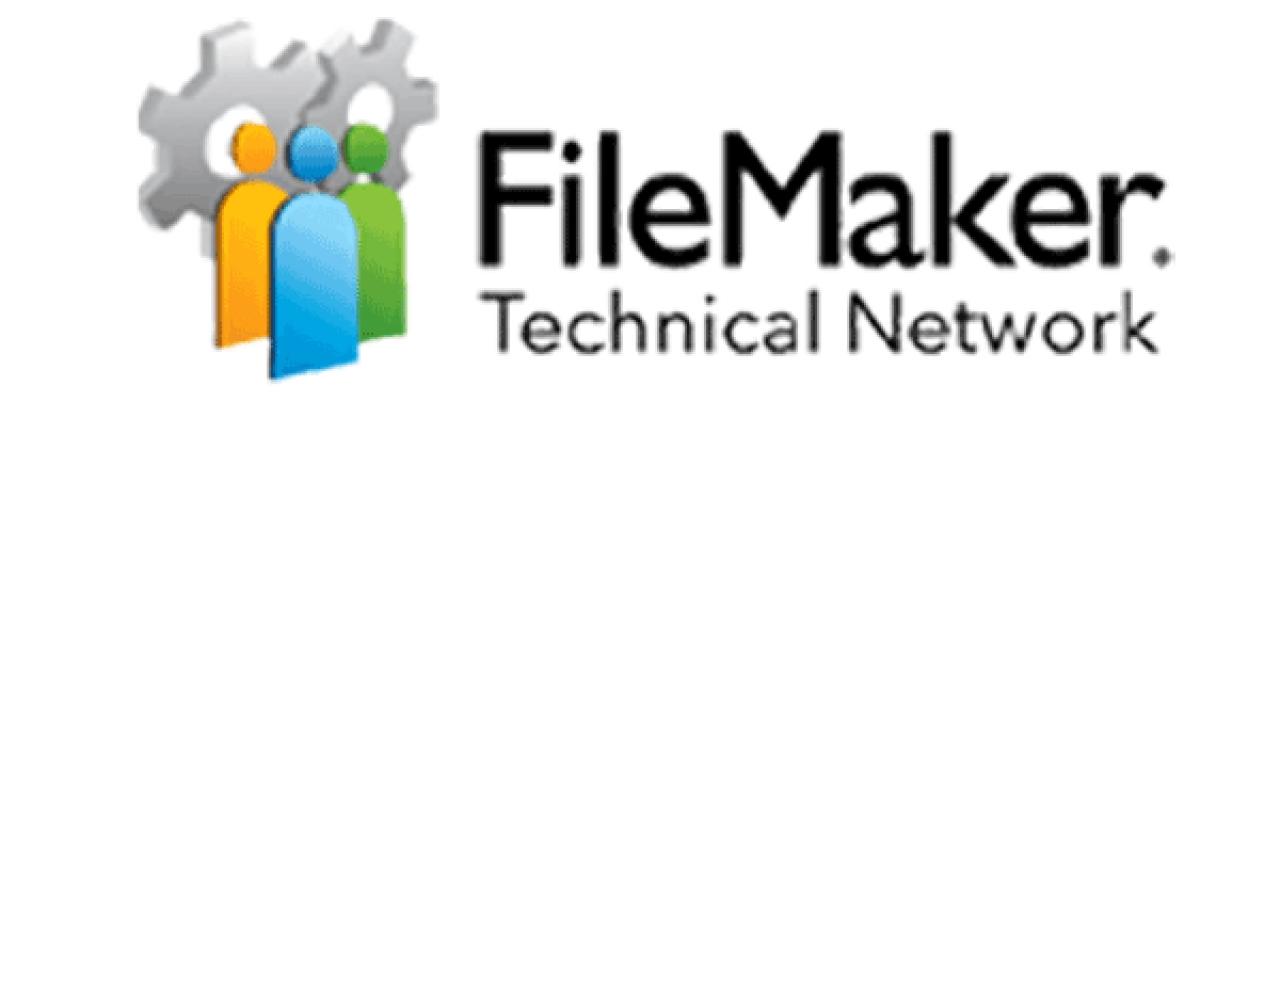 FileMaker Technical Network.